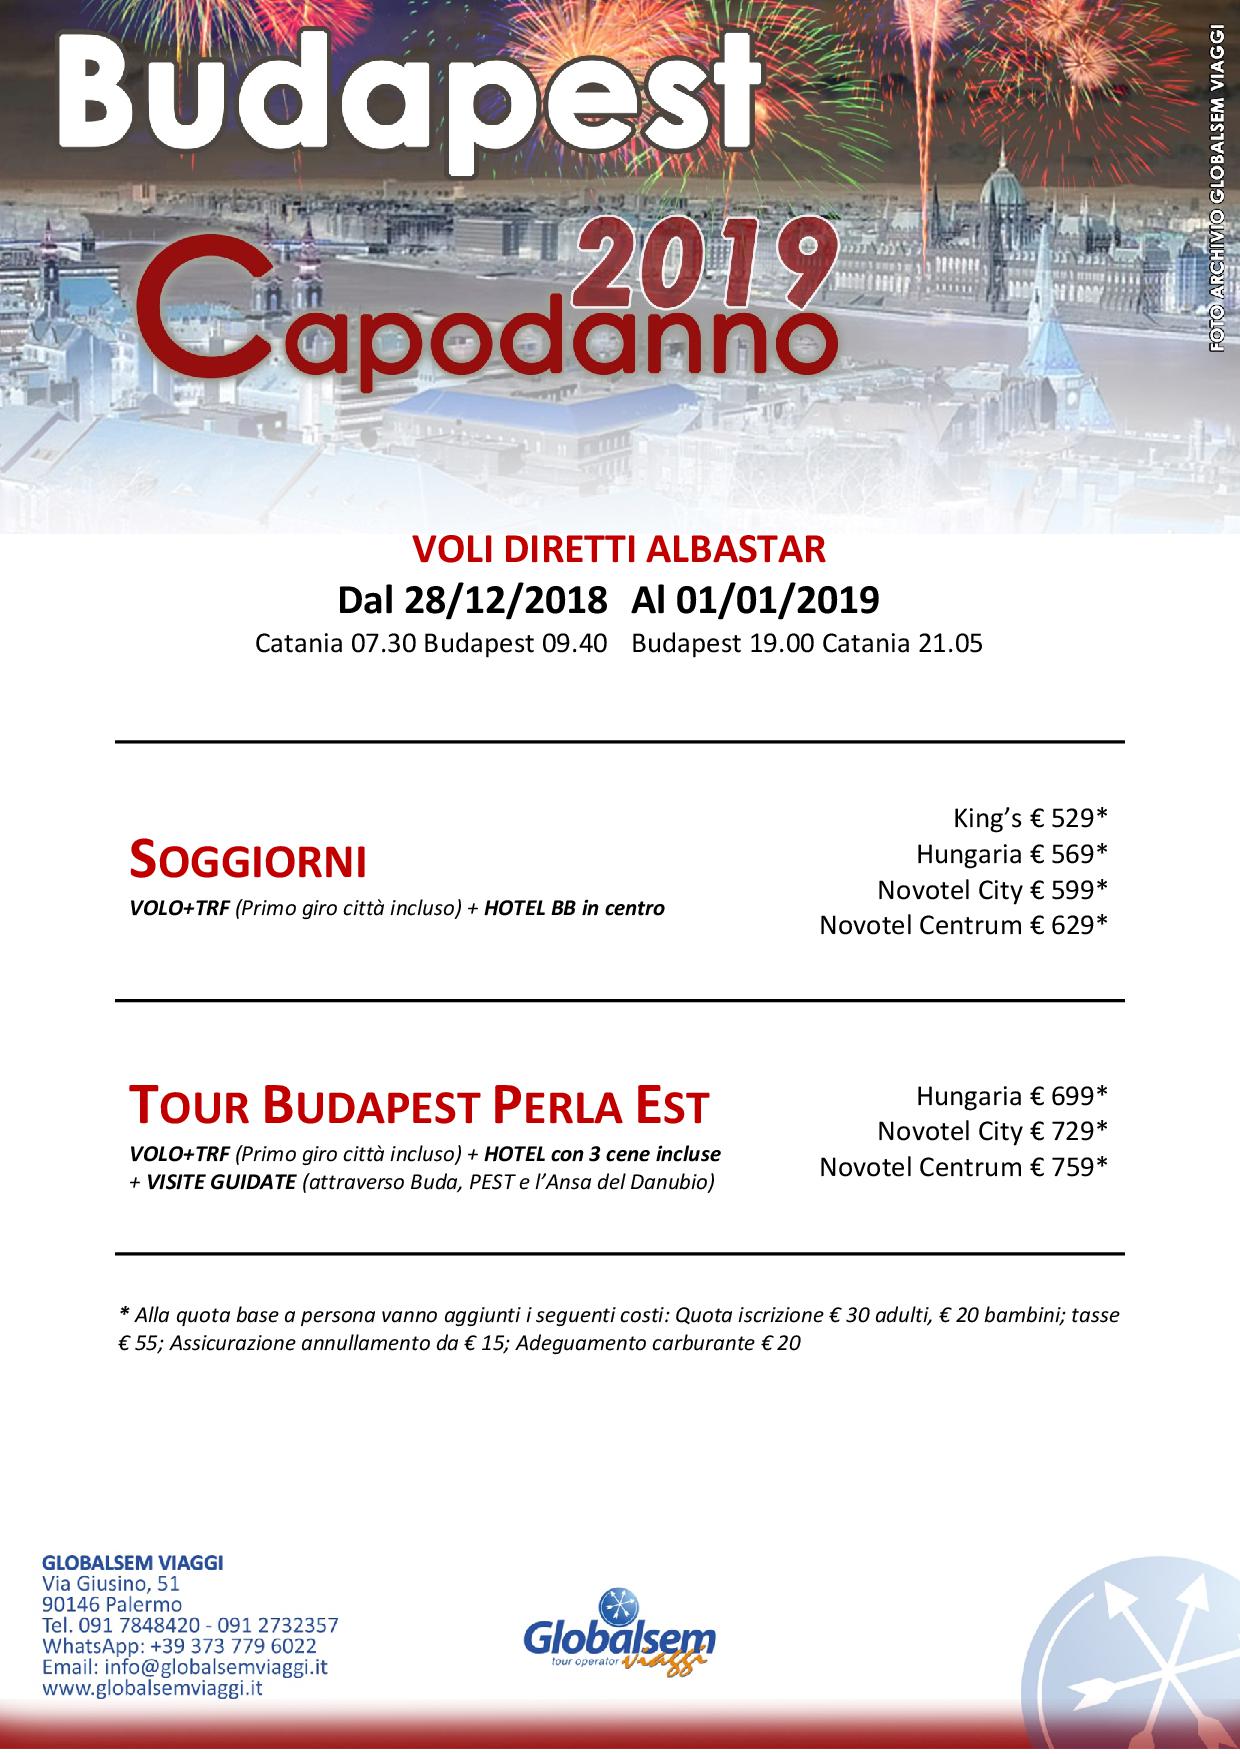 Capodanno 2019 a BUDAPESTcon volo diretto da Catania a partire da € 529